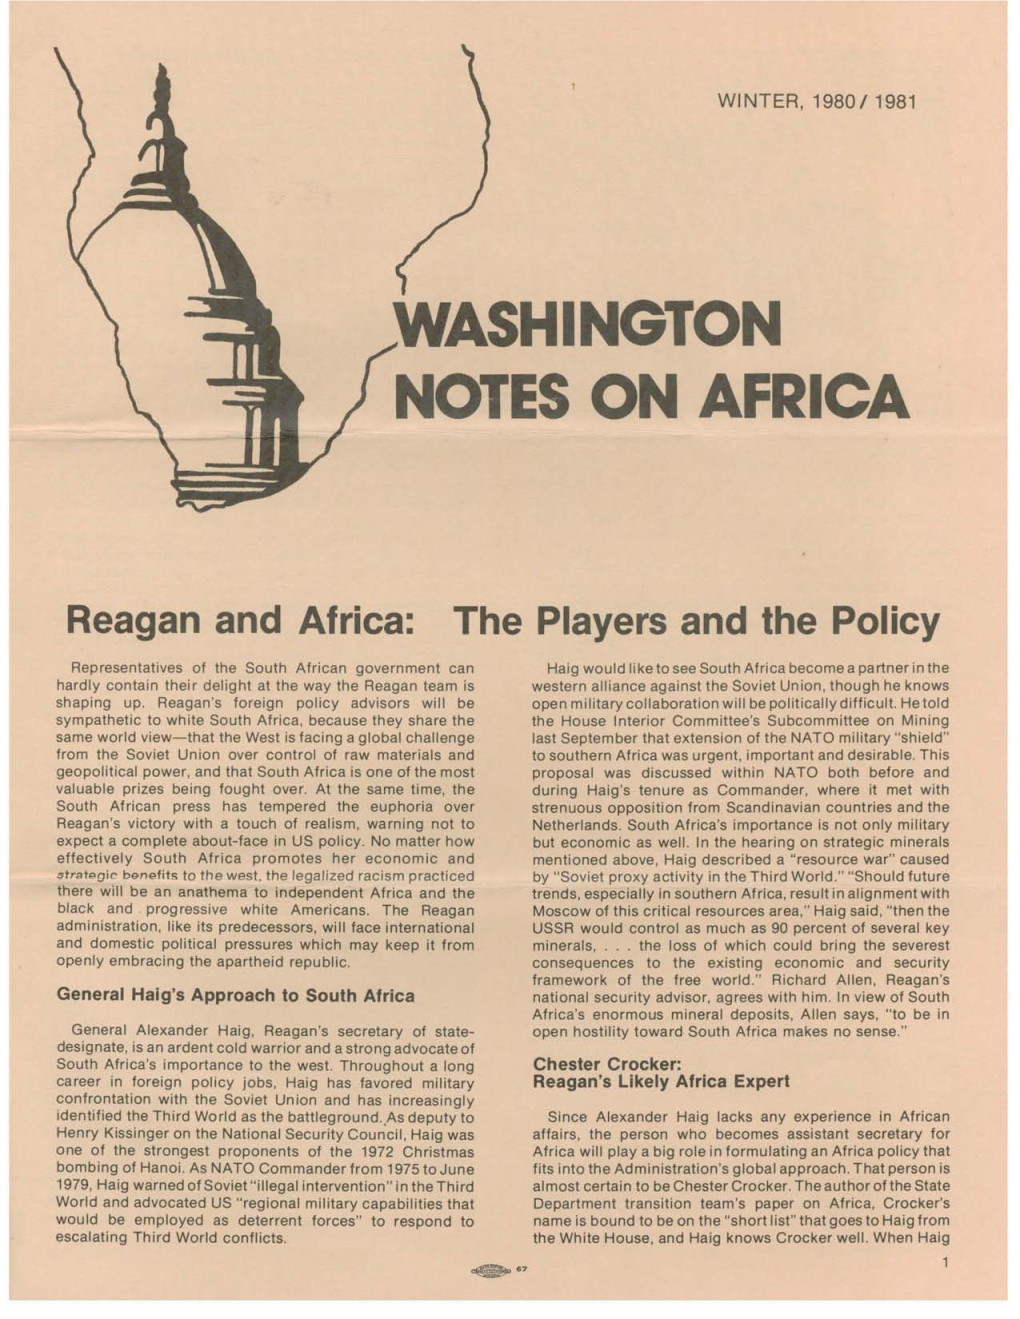 Washington Notes on Africa